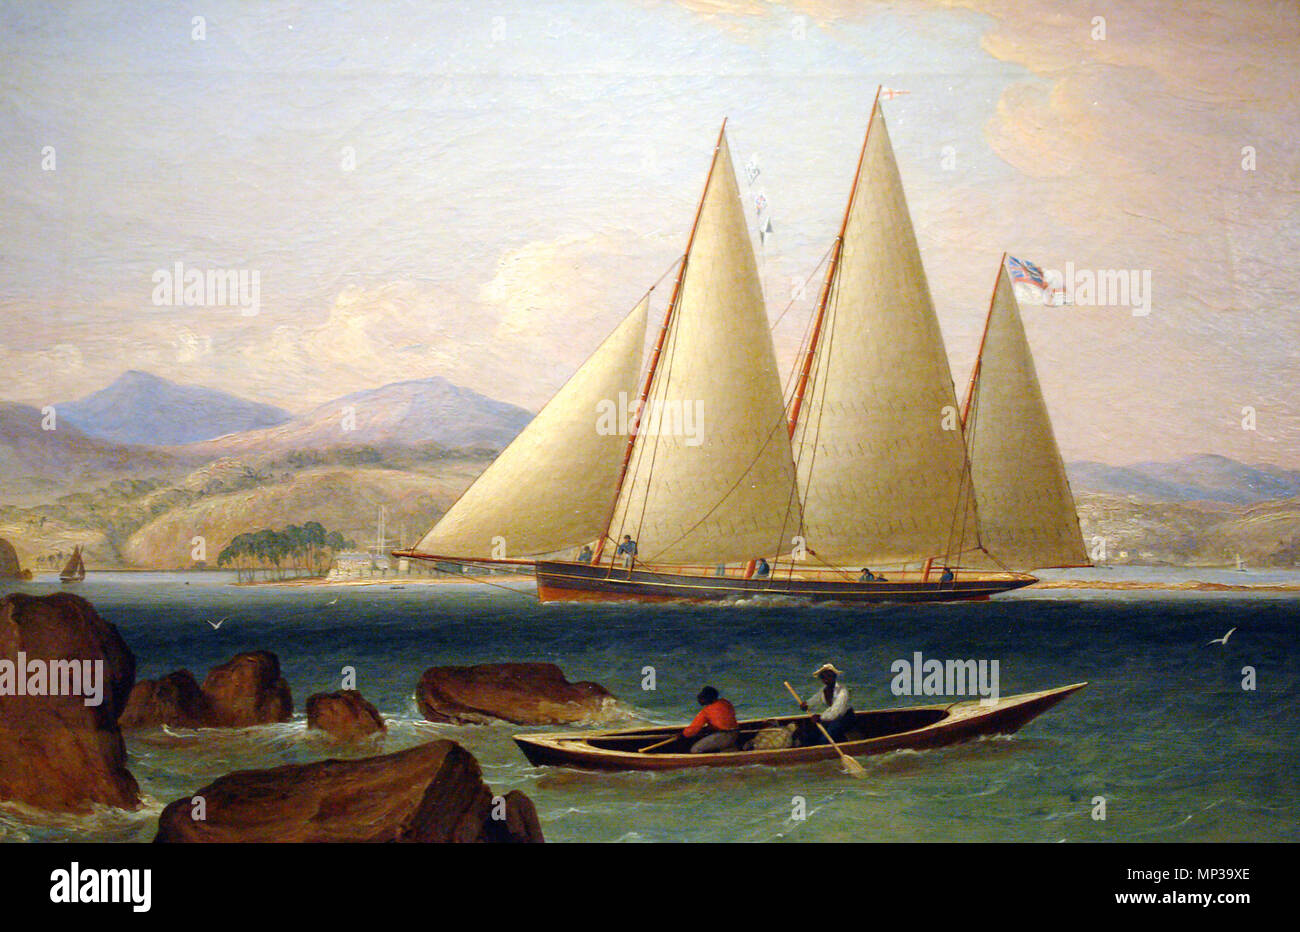 Ein Bermudian Sloop, oder Ballyhou Schoner. Ein Bermuda Sloop der Royal Navy, die Häfen der West Indies. Anfang der 1790er Jahre, die Marine eine große Anzahl dieser Bermudian Schiffe beschafft, einige bestellt direkt vom Bauherren in Bermuda, mit anderen aus dem Handel gekauft. Das bemerkenswerteste Beispiel war HMS Essiggurke, die Home News der britischen Sieg in der Schlacht von Trafalgar. Das Bermudian Schiffe, die von einem bis zu drei Masten haben konnten, waren zunächst die Bedrohung durch französische Freibeuter in den westlichen Gewässern zu begegnen, und wurde später der standard Beratung vesse Stockfoto